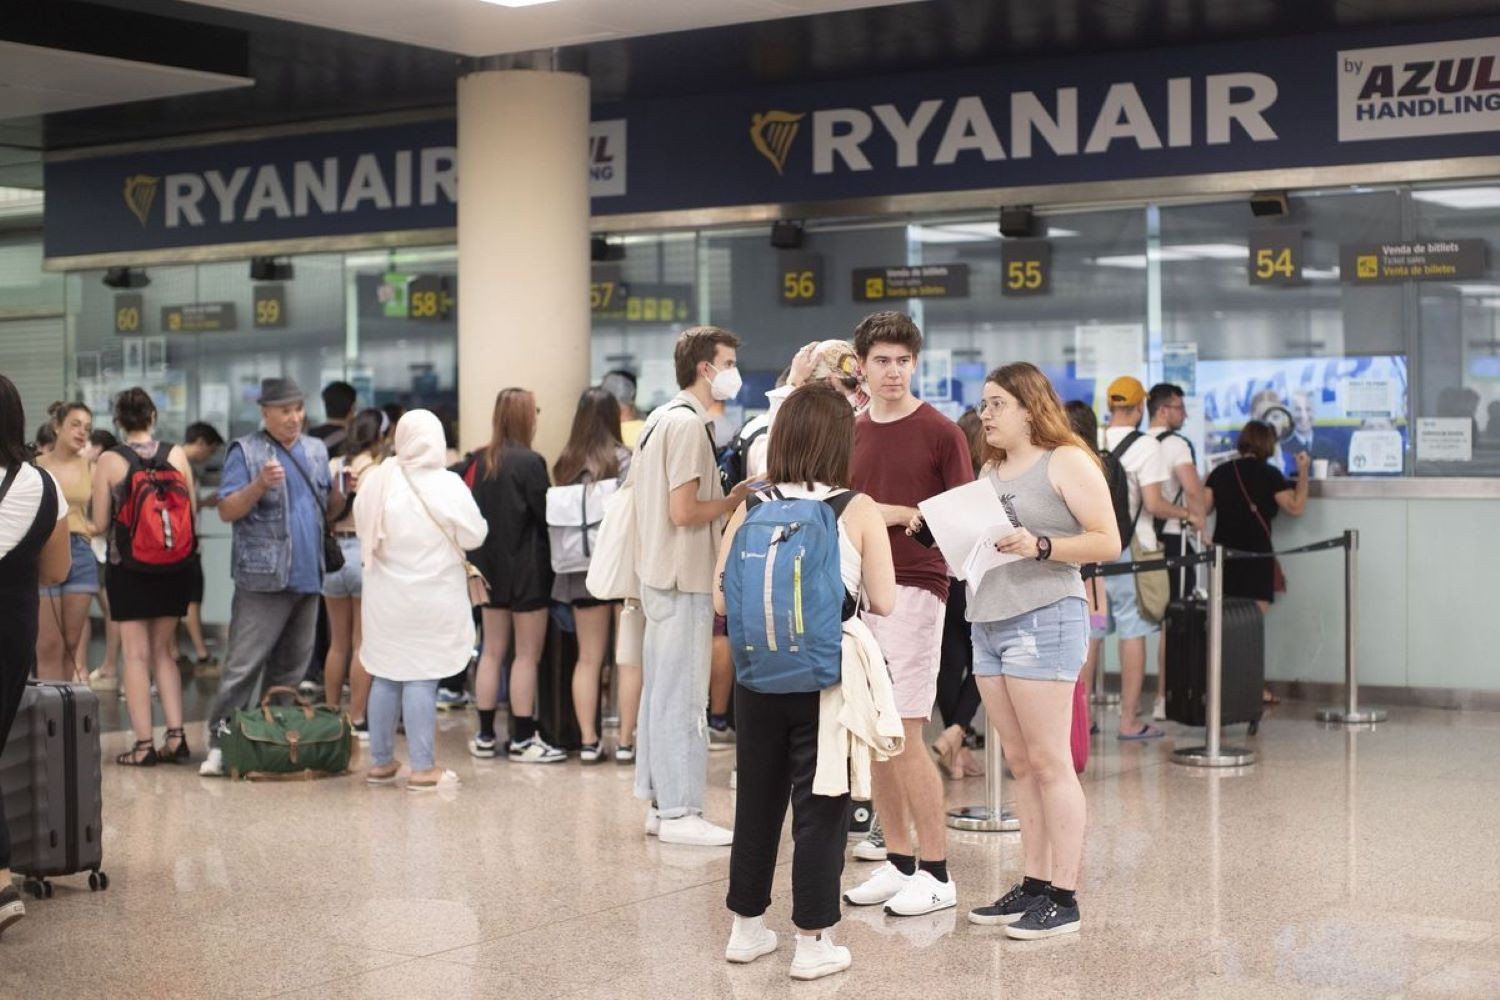 Terminal 2 del aeropuerto de El Prat-Barcelona durante la huelga de tripulantes de cabina de Ryanair / EFE - Marta Pérez